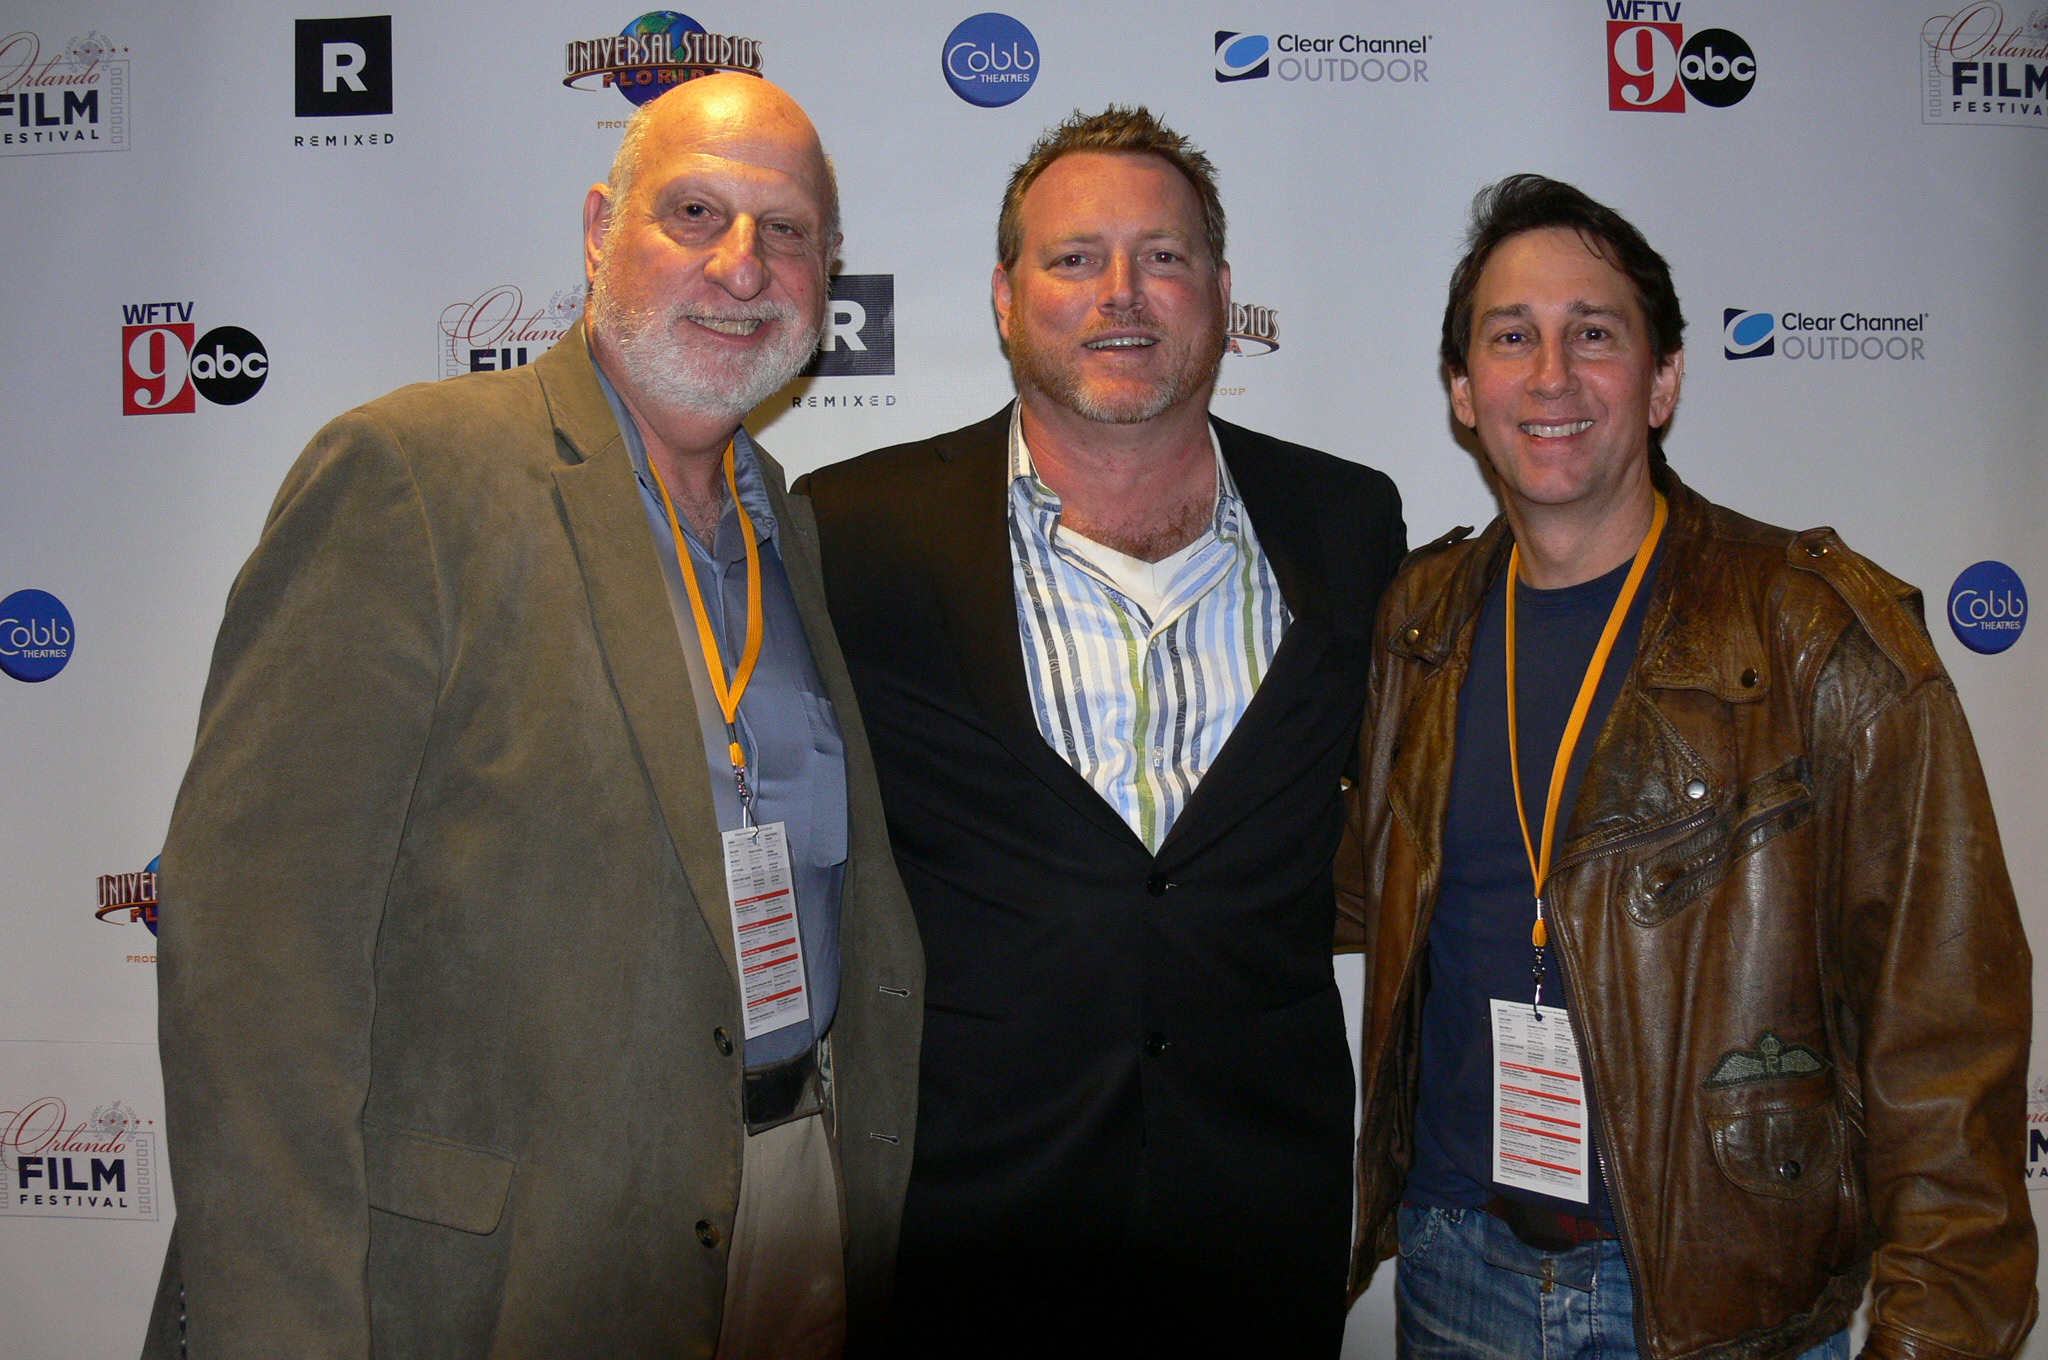 Les Goldman, Dan Springen, Robert Mann at the 2013 Orlando Film Festival.